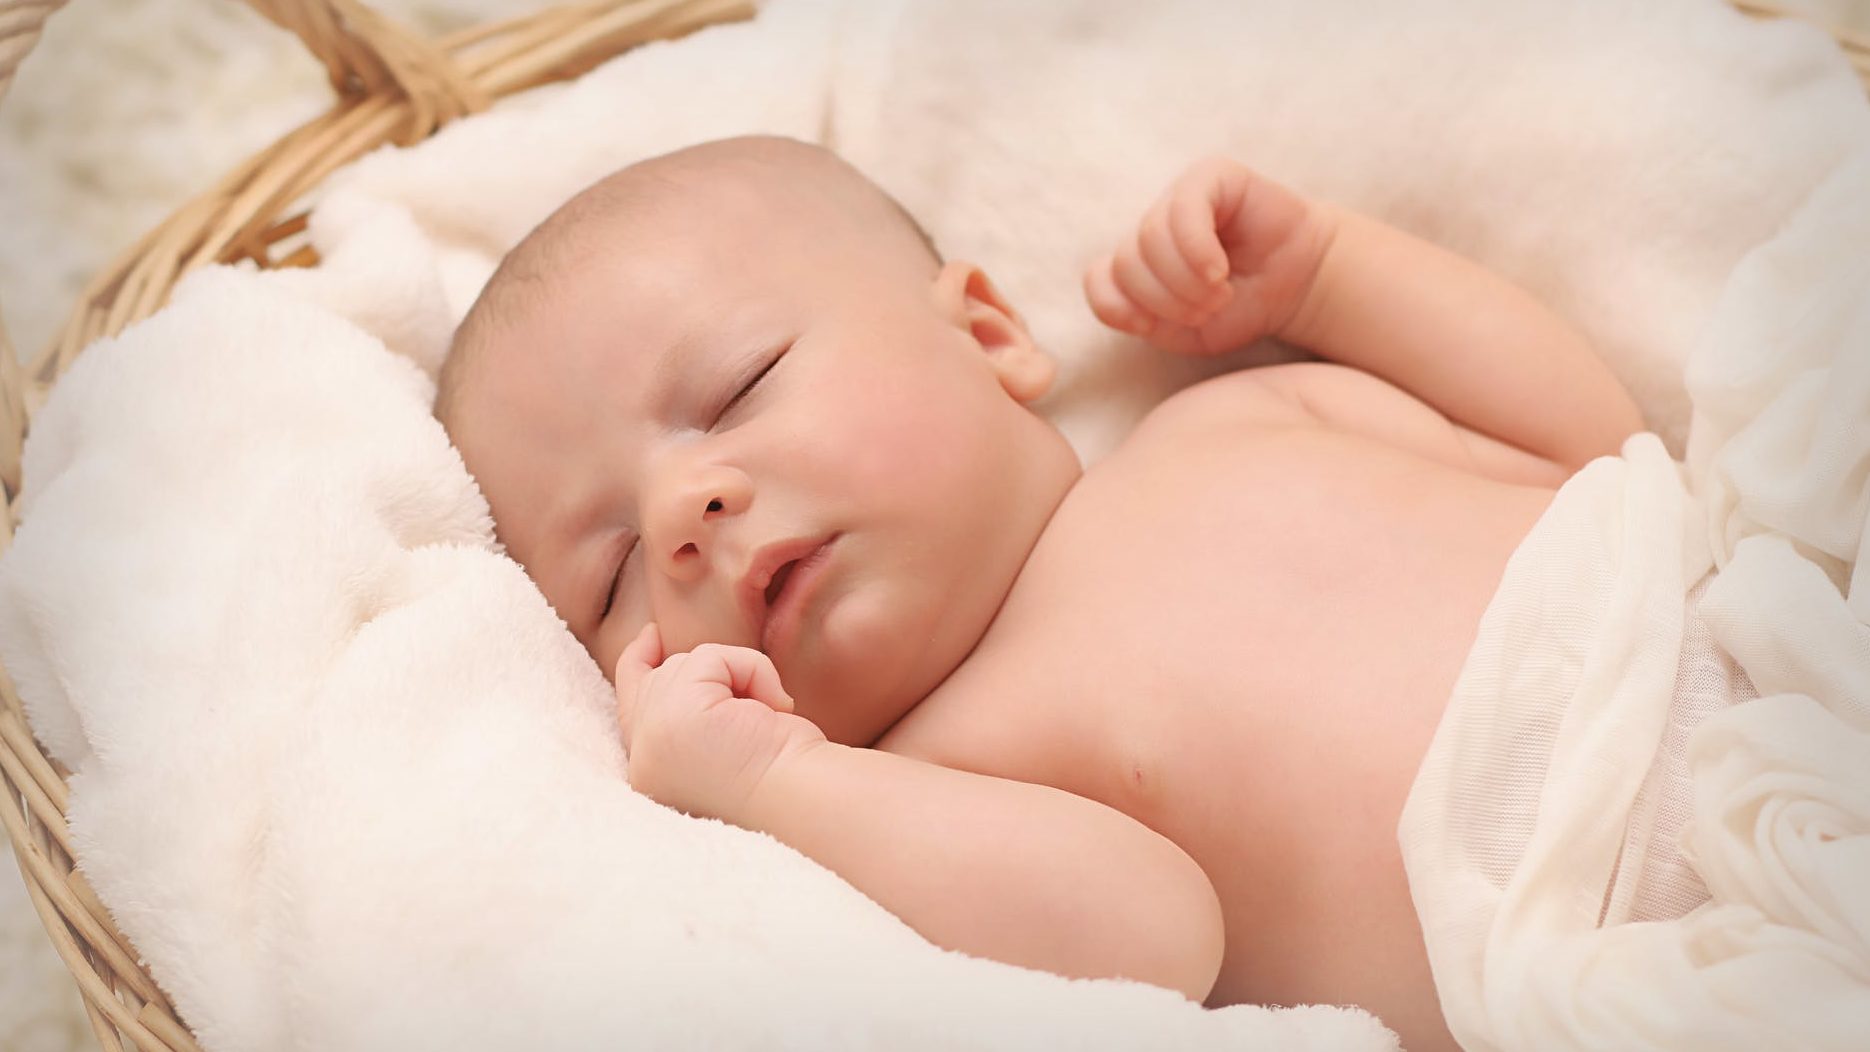 新生児の向き癖が気になる タオルを使った直し方や防止策をご紹介します 新米パパの子育て奮闘記 パパによる子育てブログ